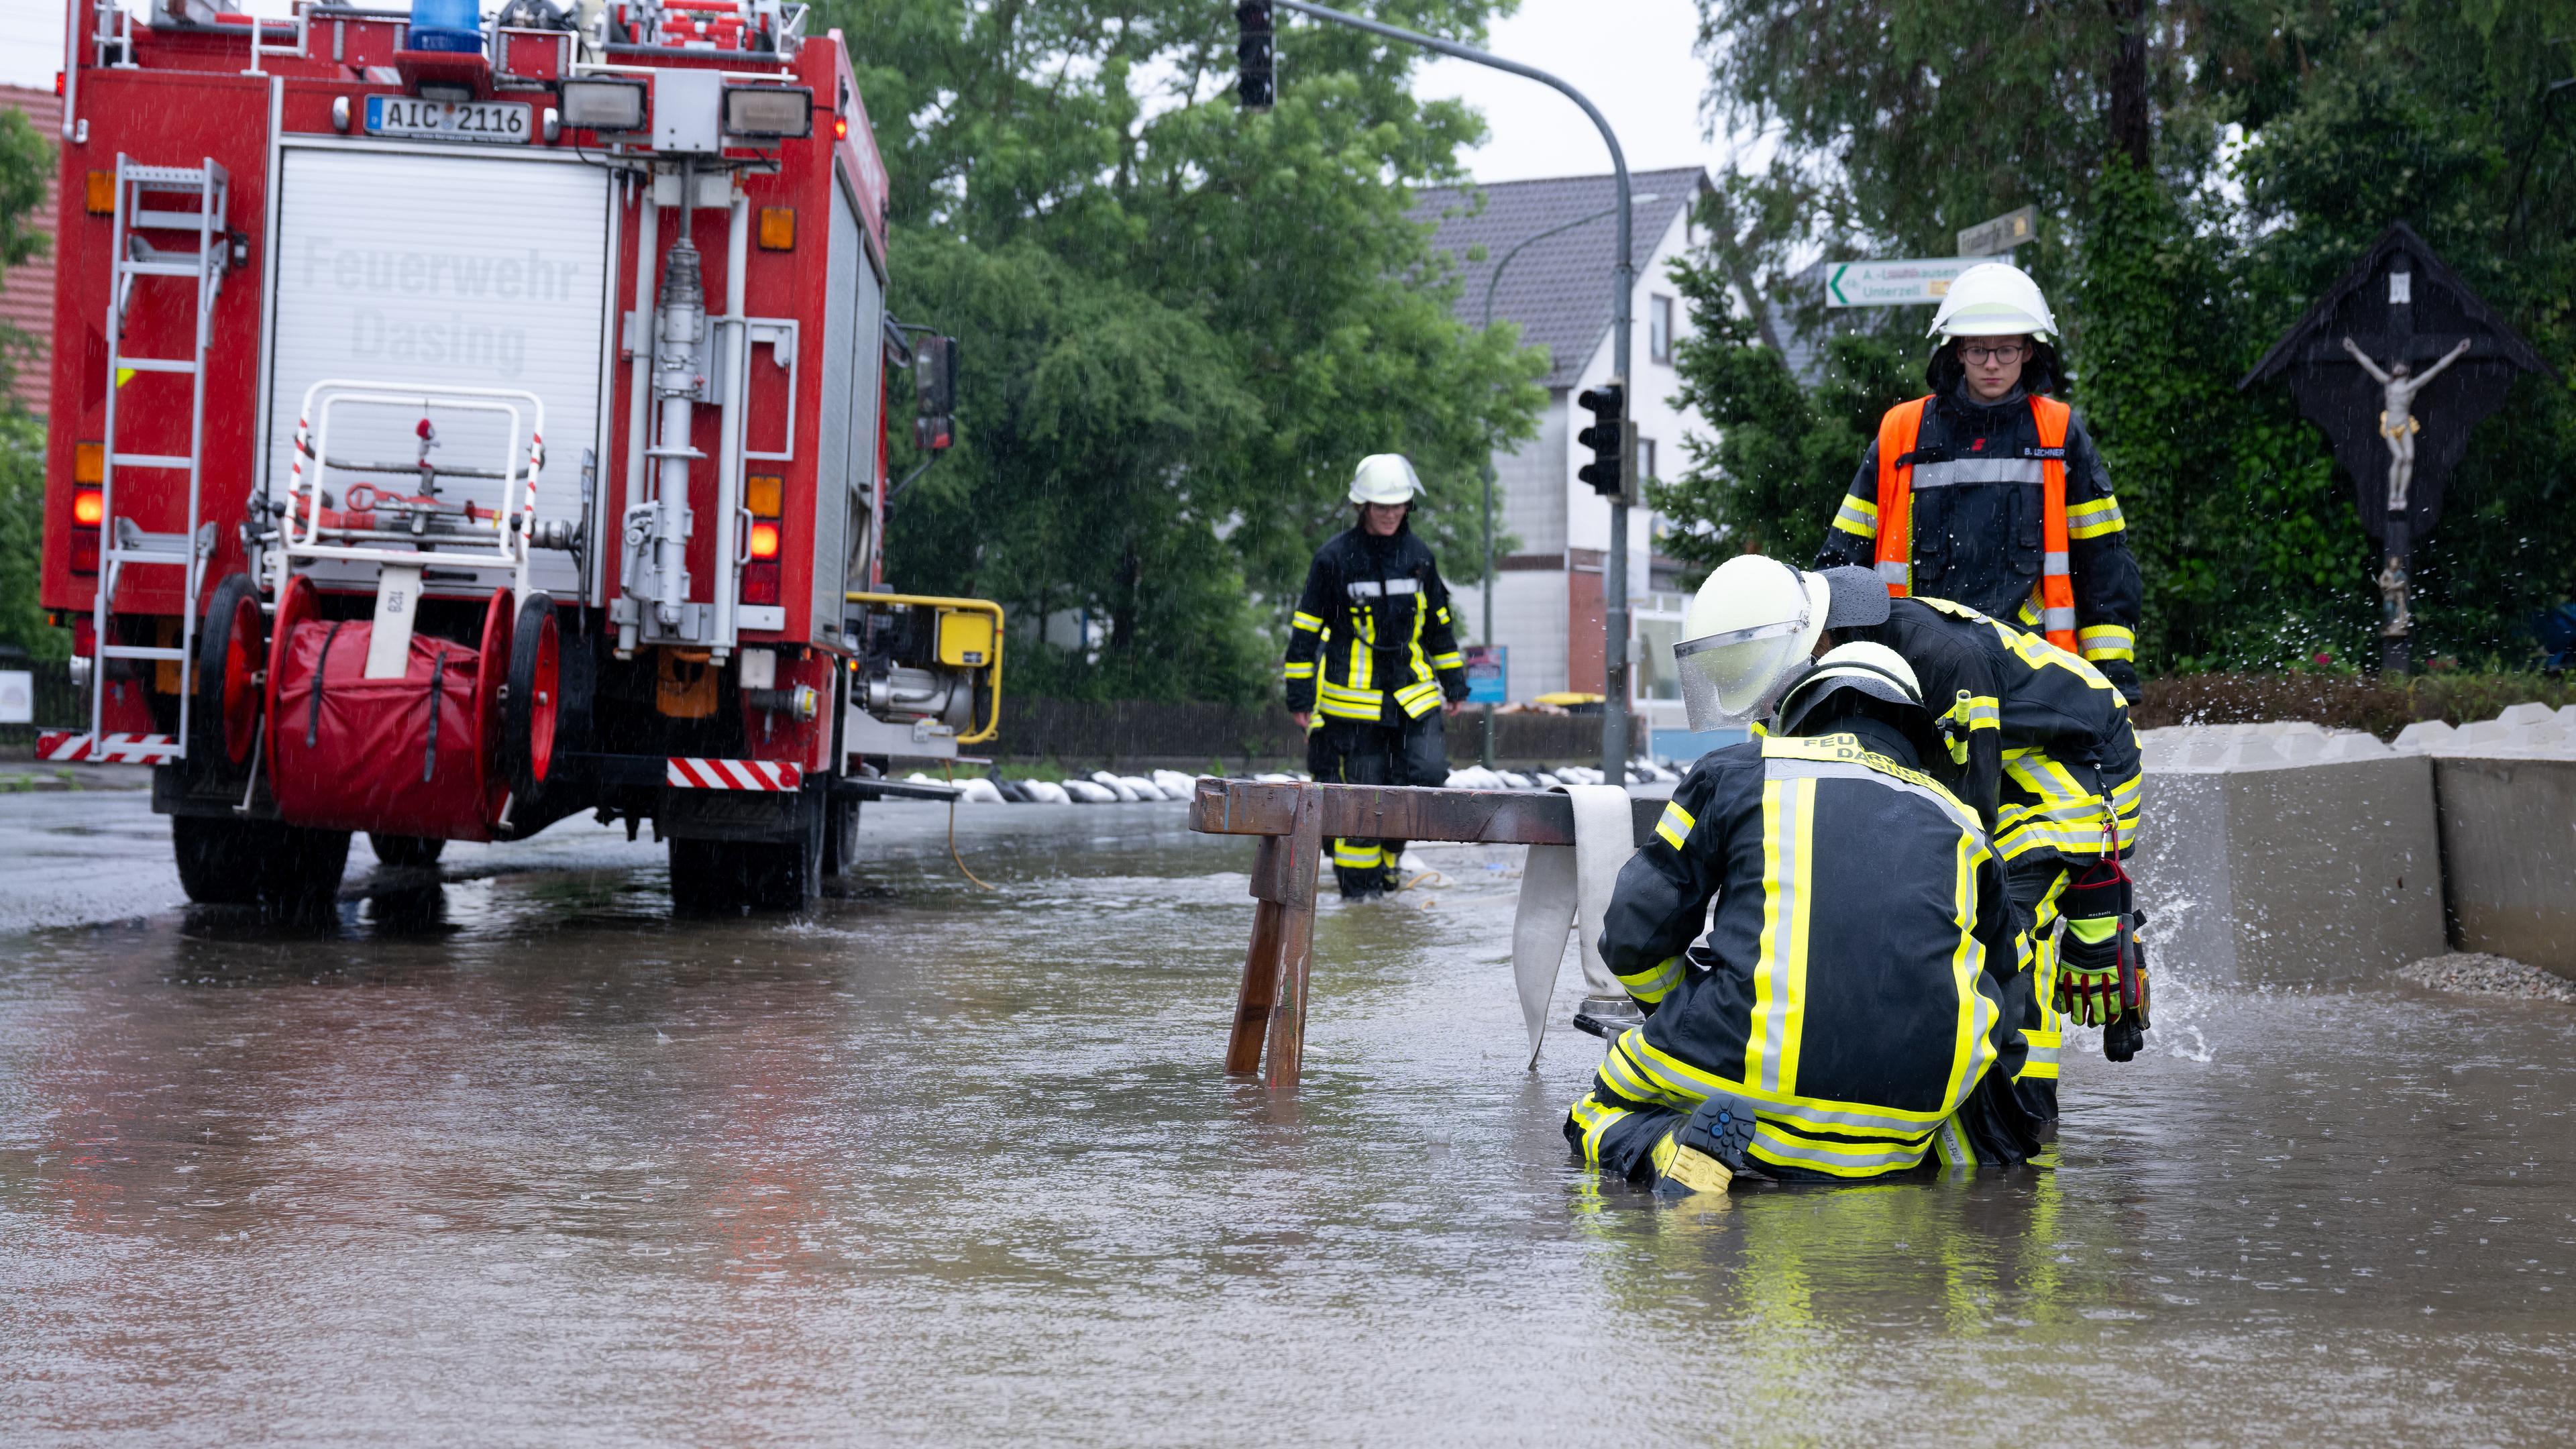 Hochwasser in Bayern - Dasing